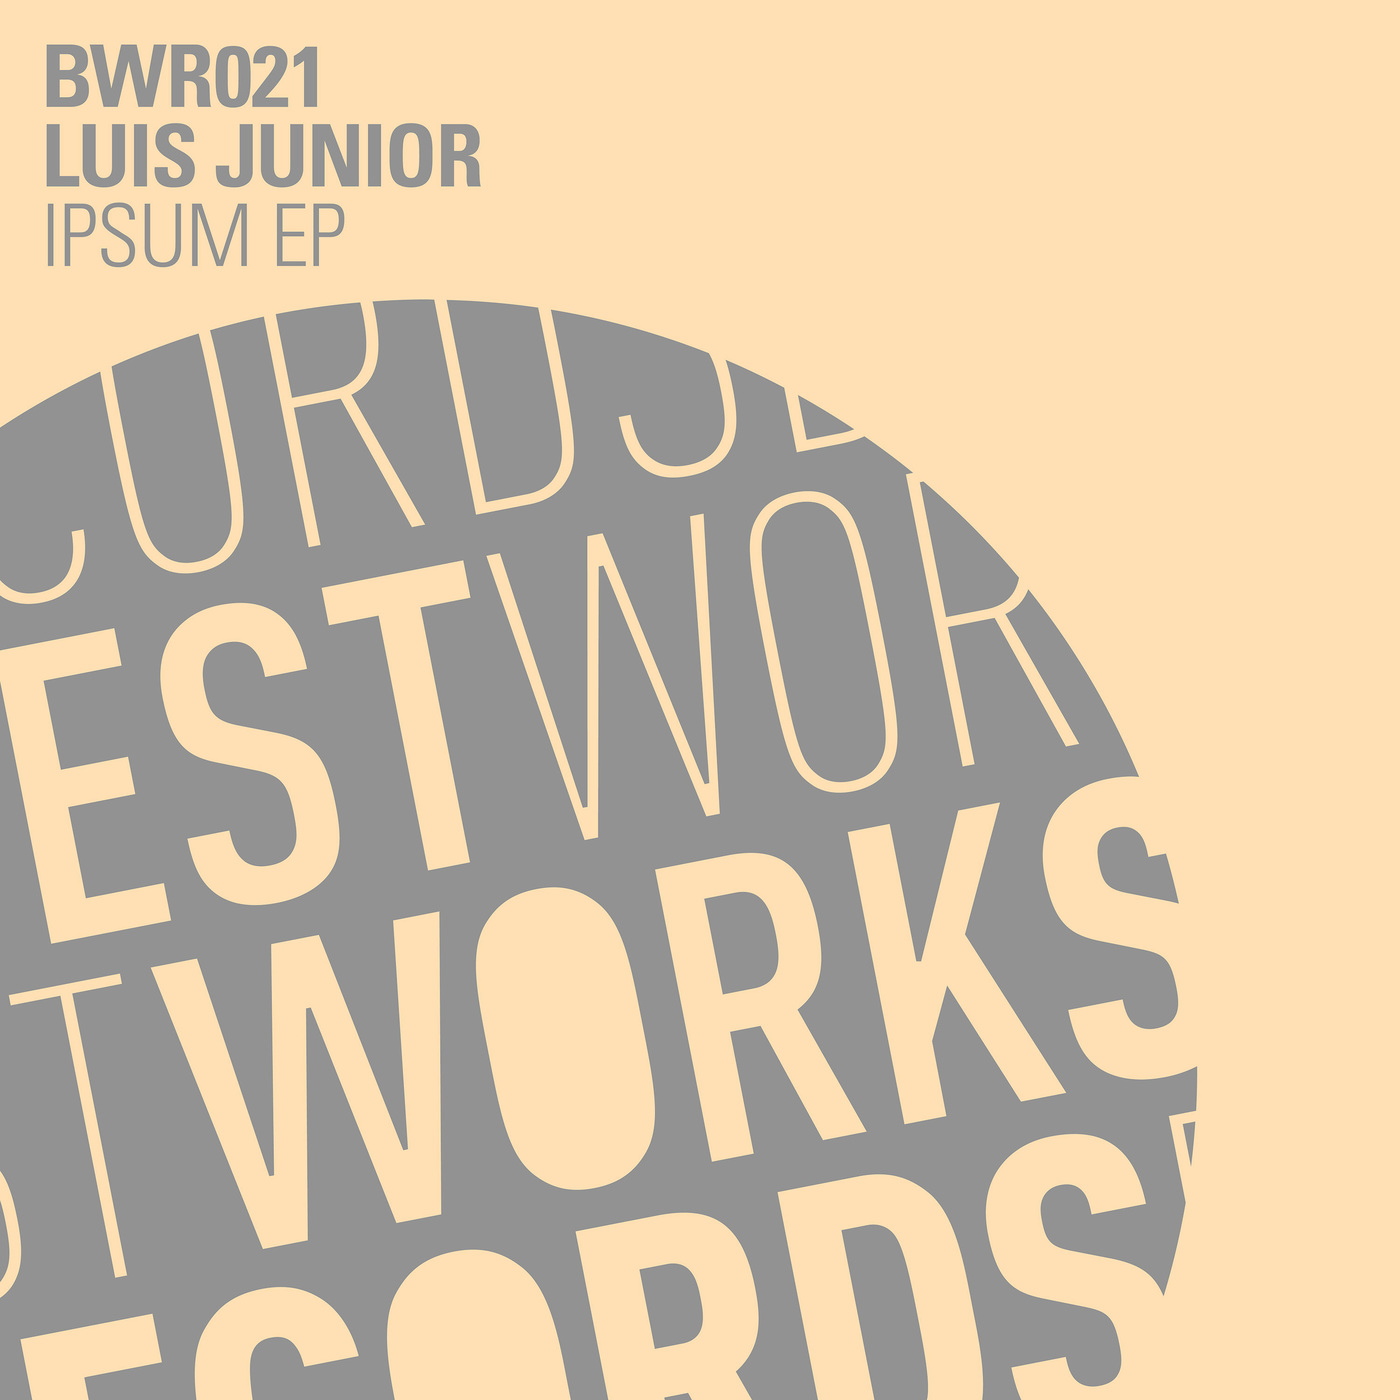 Luis Junior - Ipsum / Best Works Records